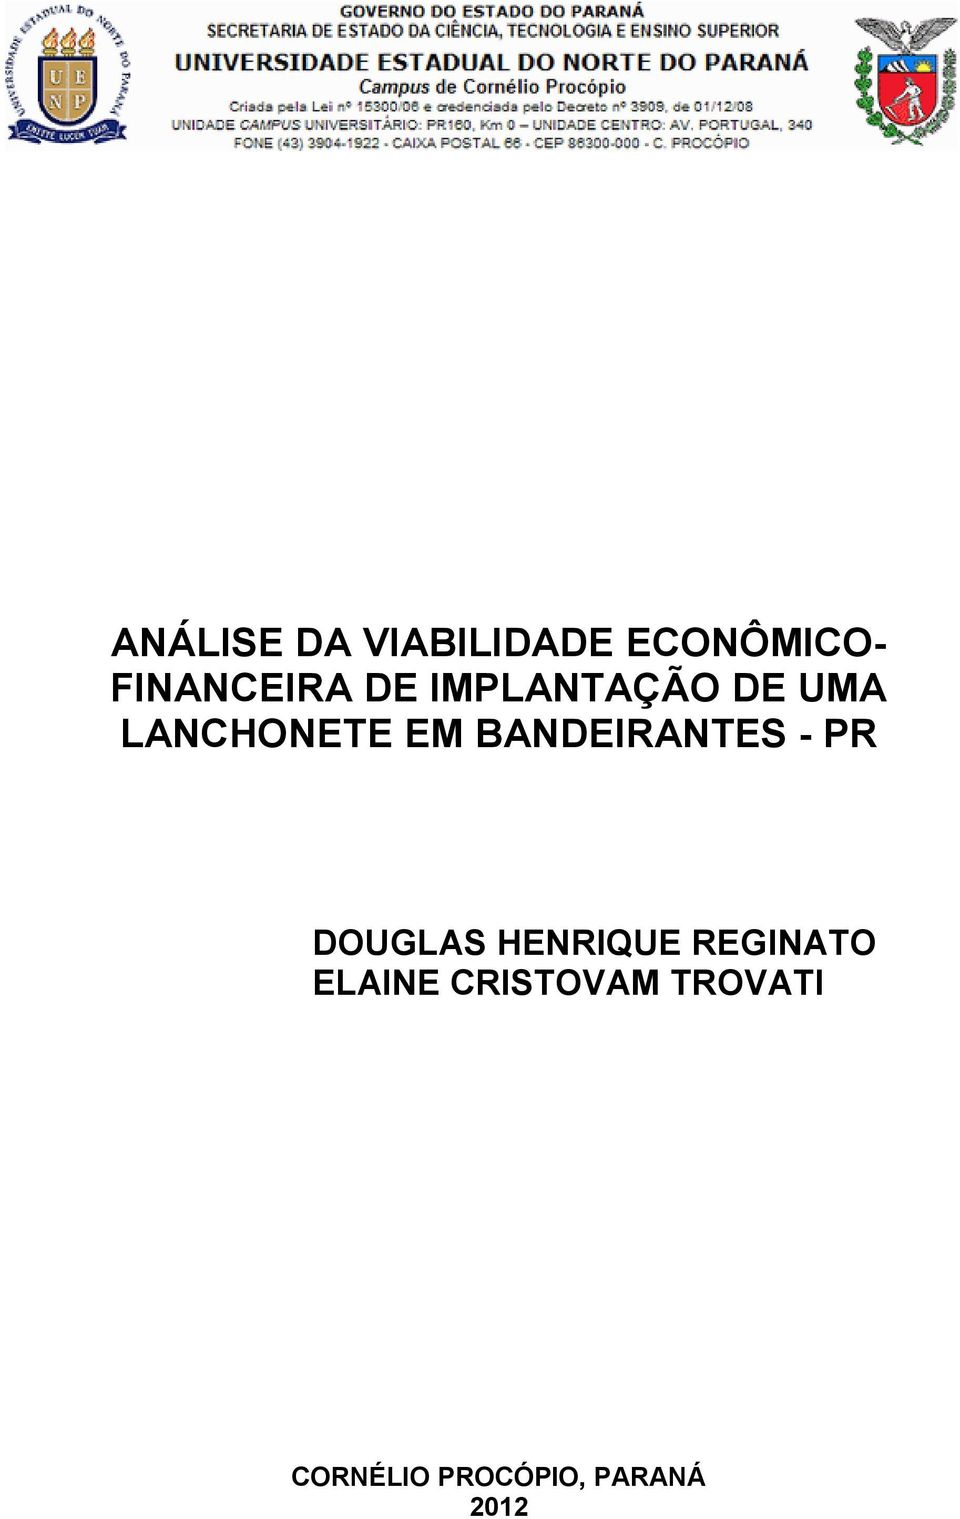 BANDEIRANTES - PR DOUGLAS HENRIQUE REGINATO